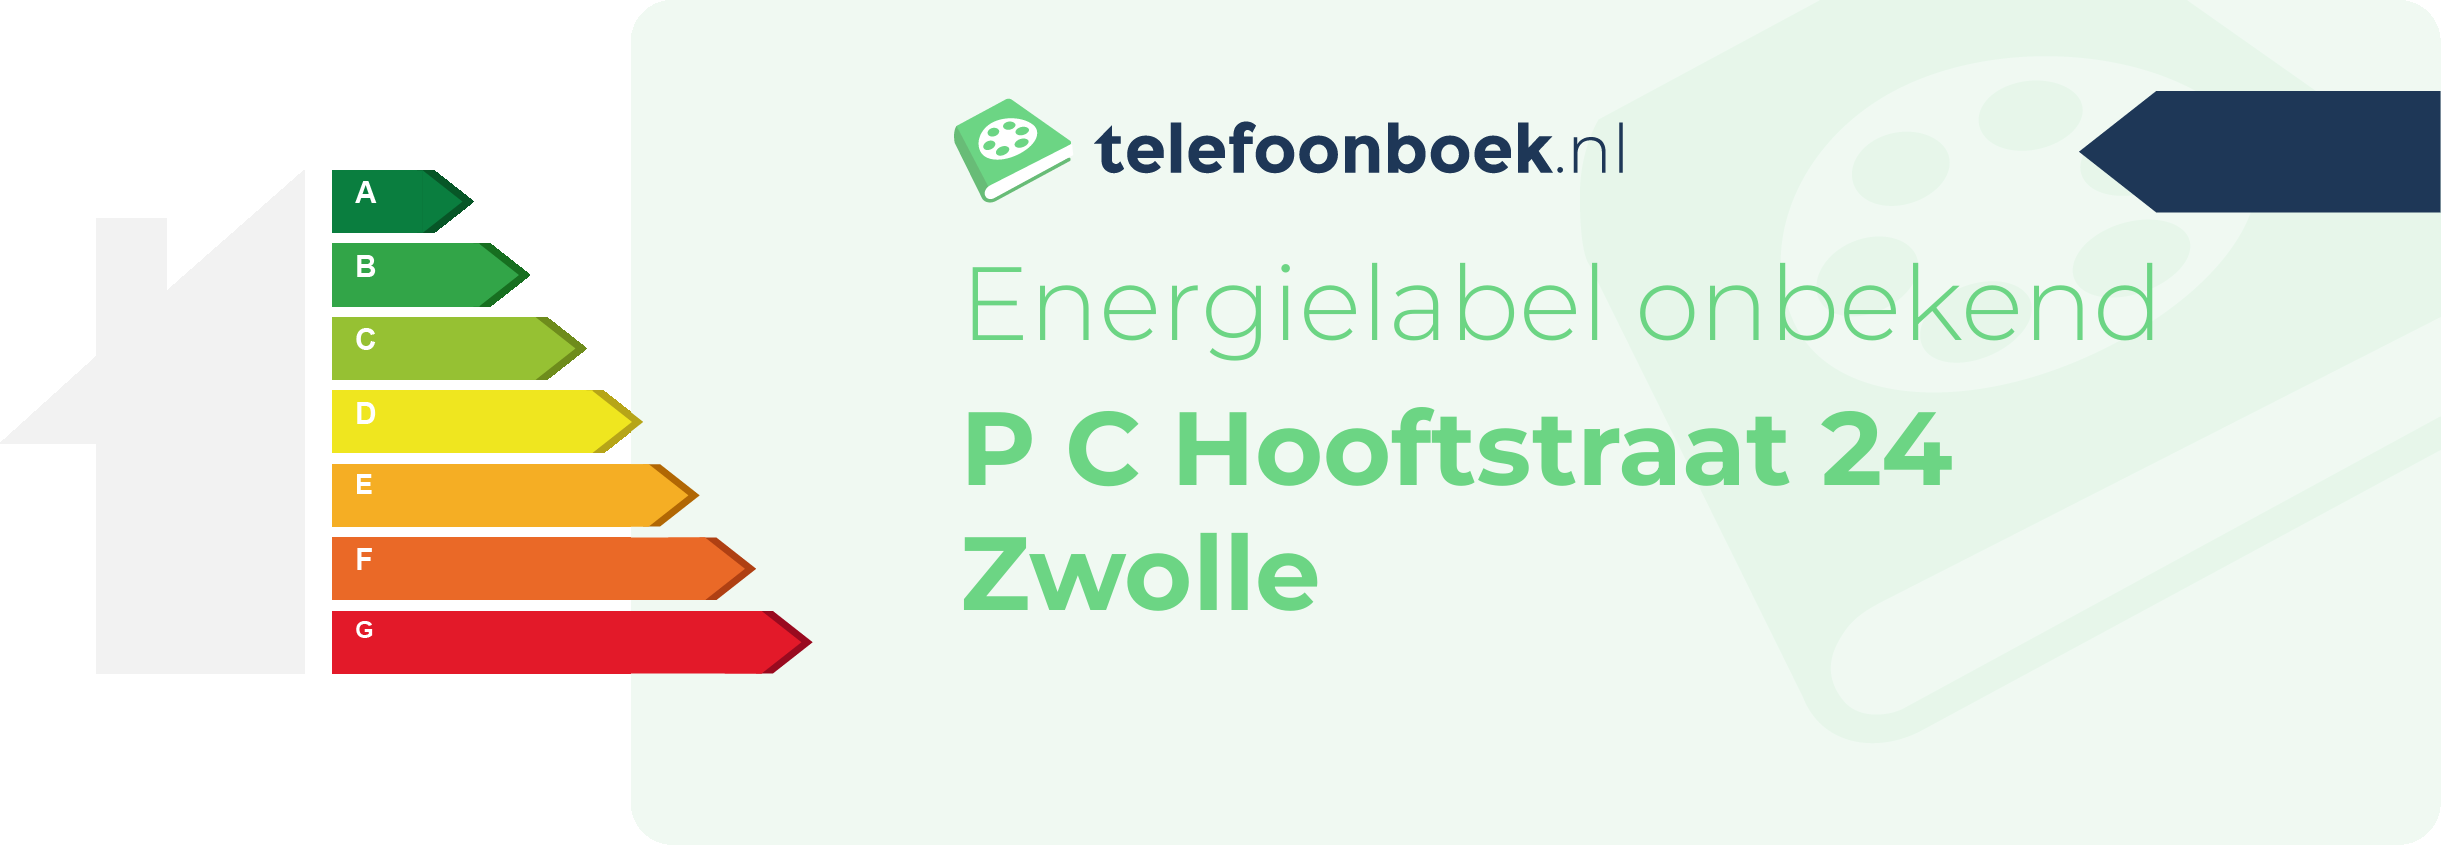 Energielabel P C Hooftstraat 24 Zwolle